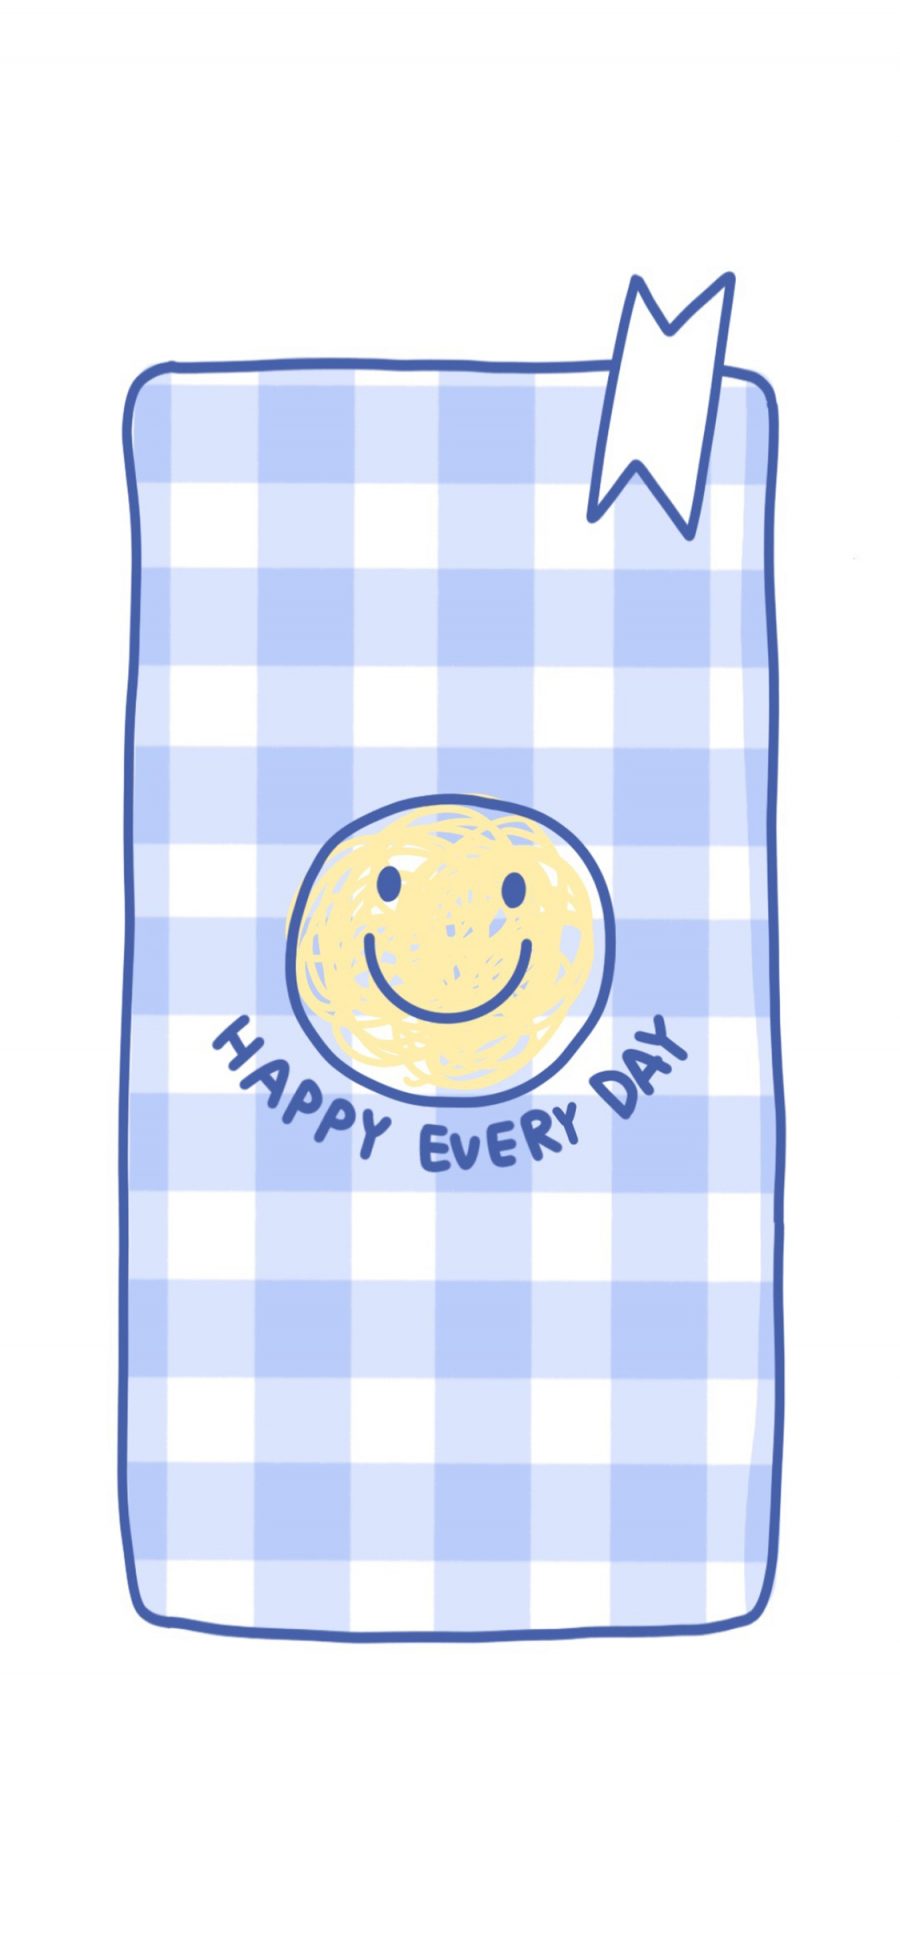 [2436×1125]笑脸 happy every day 表情 苹果手机动漫壁纸图片